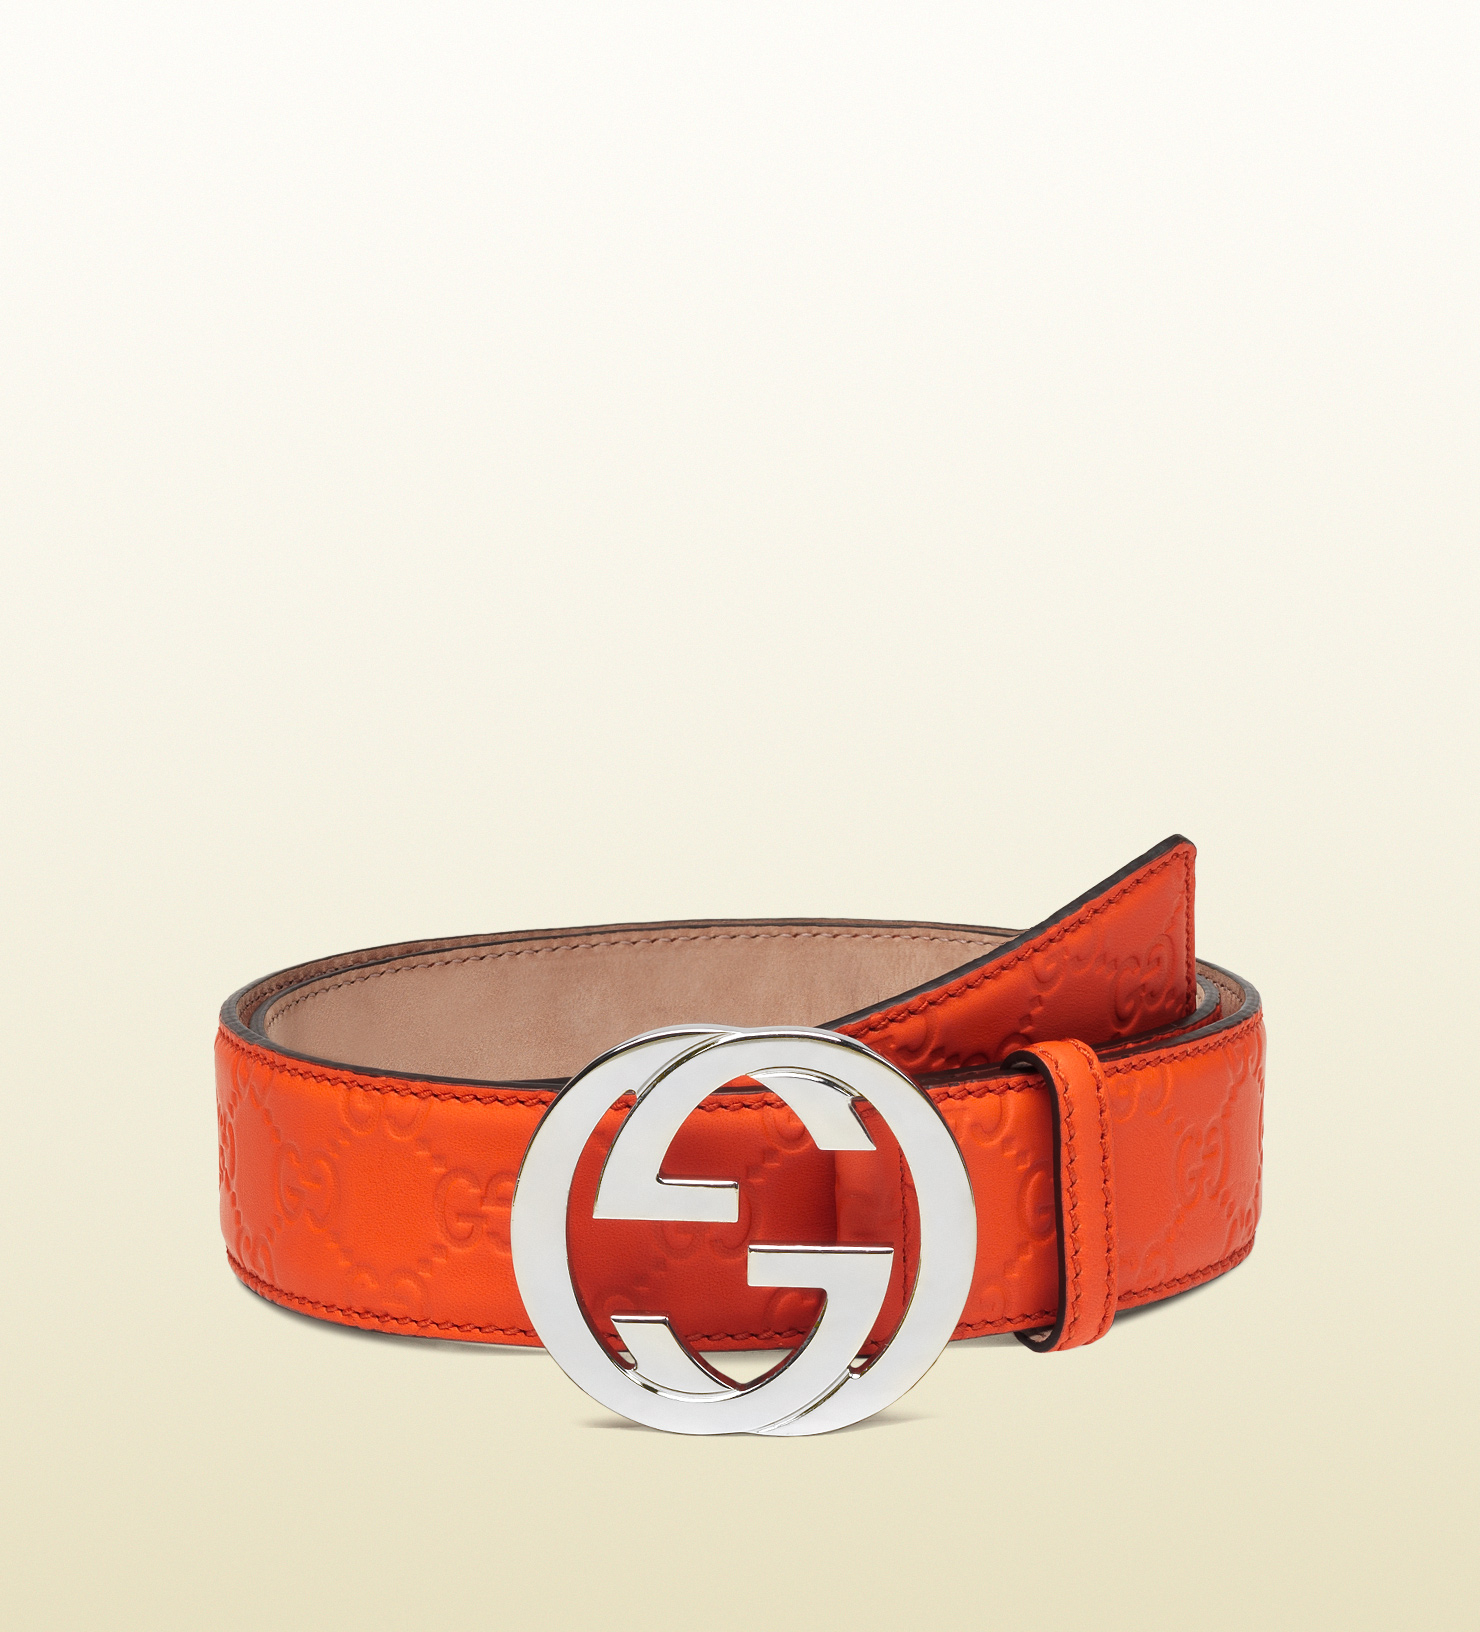 Lyst - Gucci Belt with Interlocking G Buckle in Orange for Men